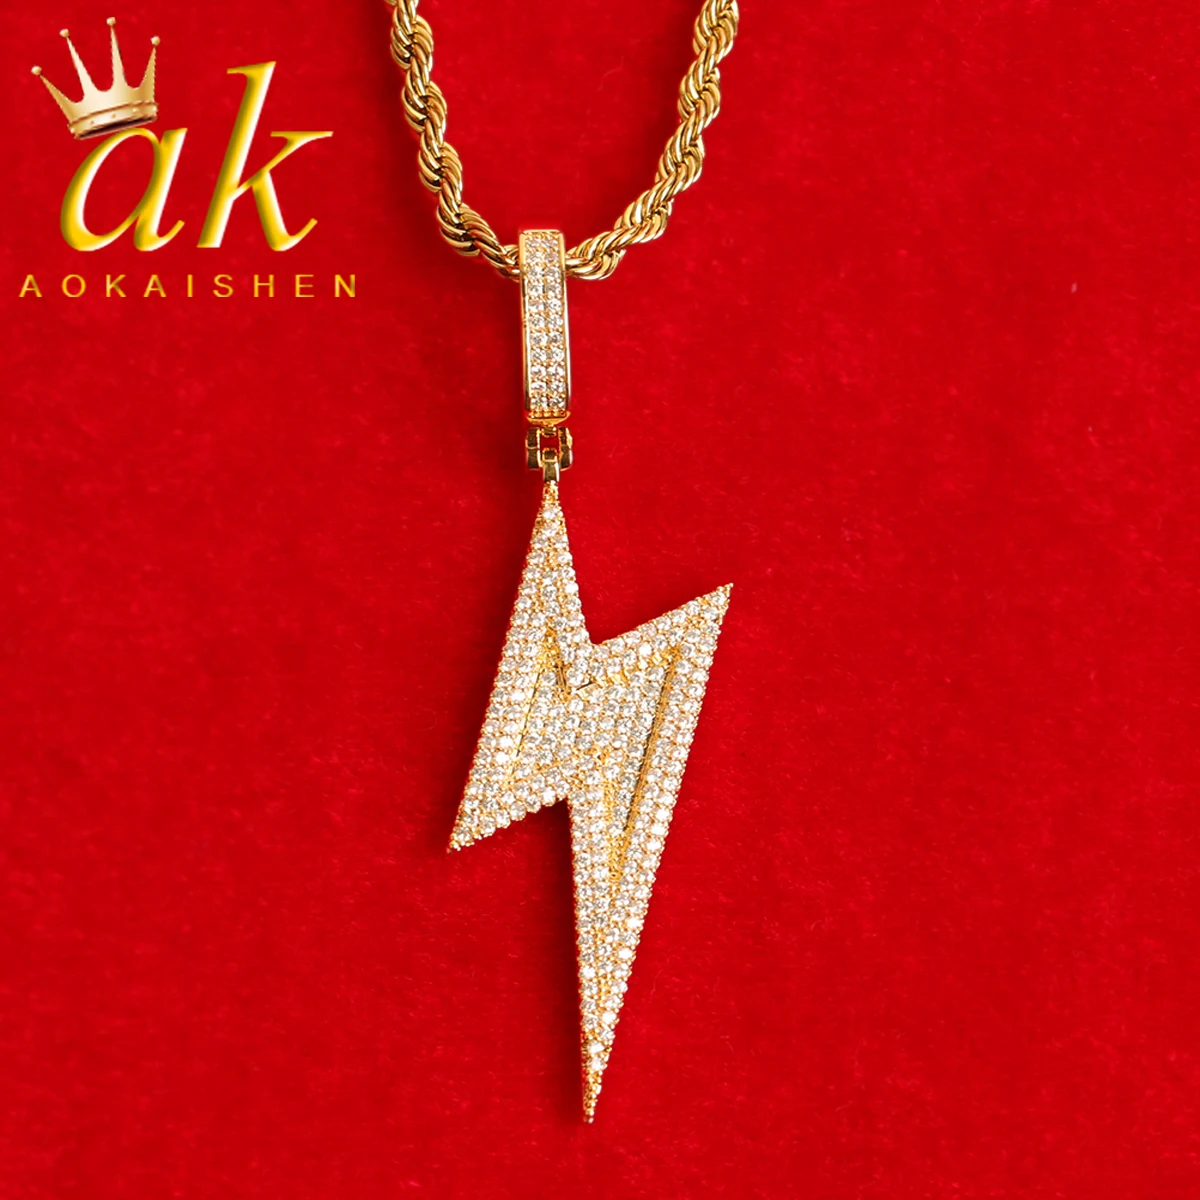 

Ожерелье Aokaishen с подвеской в виде молнии и болта, мужское ожерелье с настоящим золотым покрытием, украшения в стиле хип-хоп